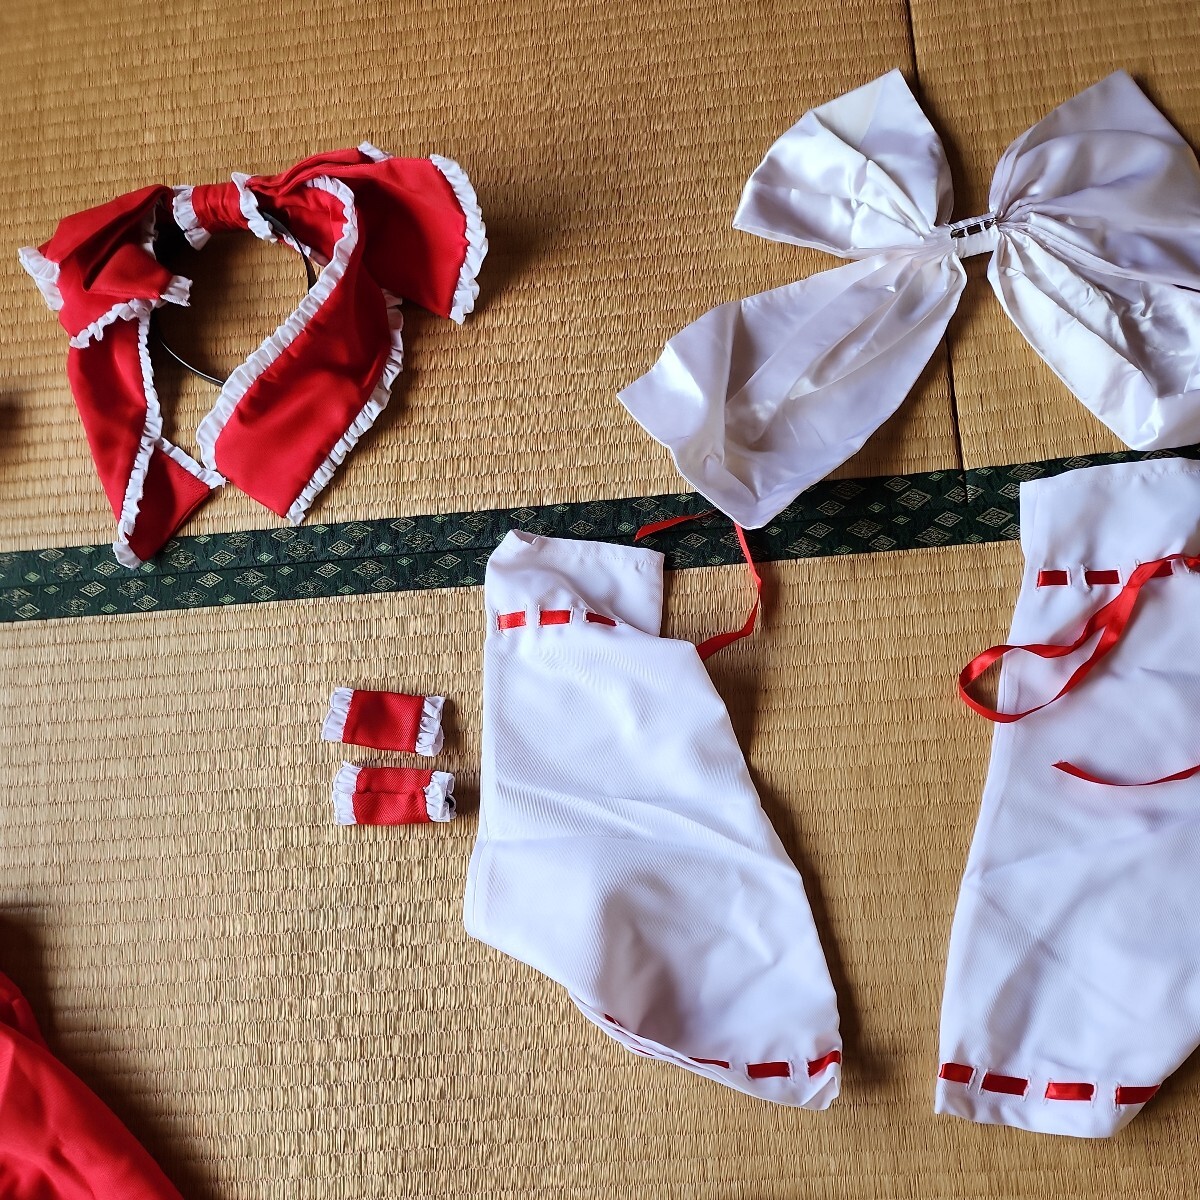  восток person Project. красота . сон S размер обувь 23 см один иен старт костюмированная игра .. белый . красный .... конструкция большой лента-ободок . лента . стиль 